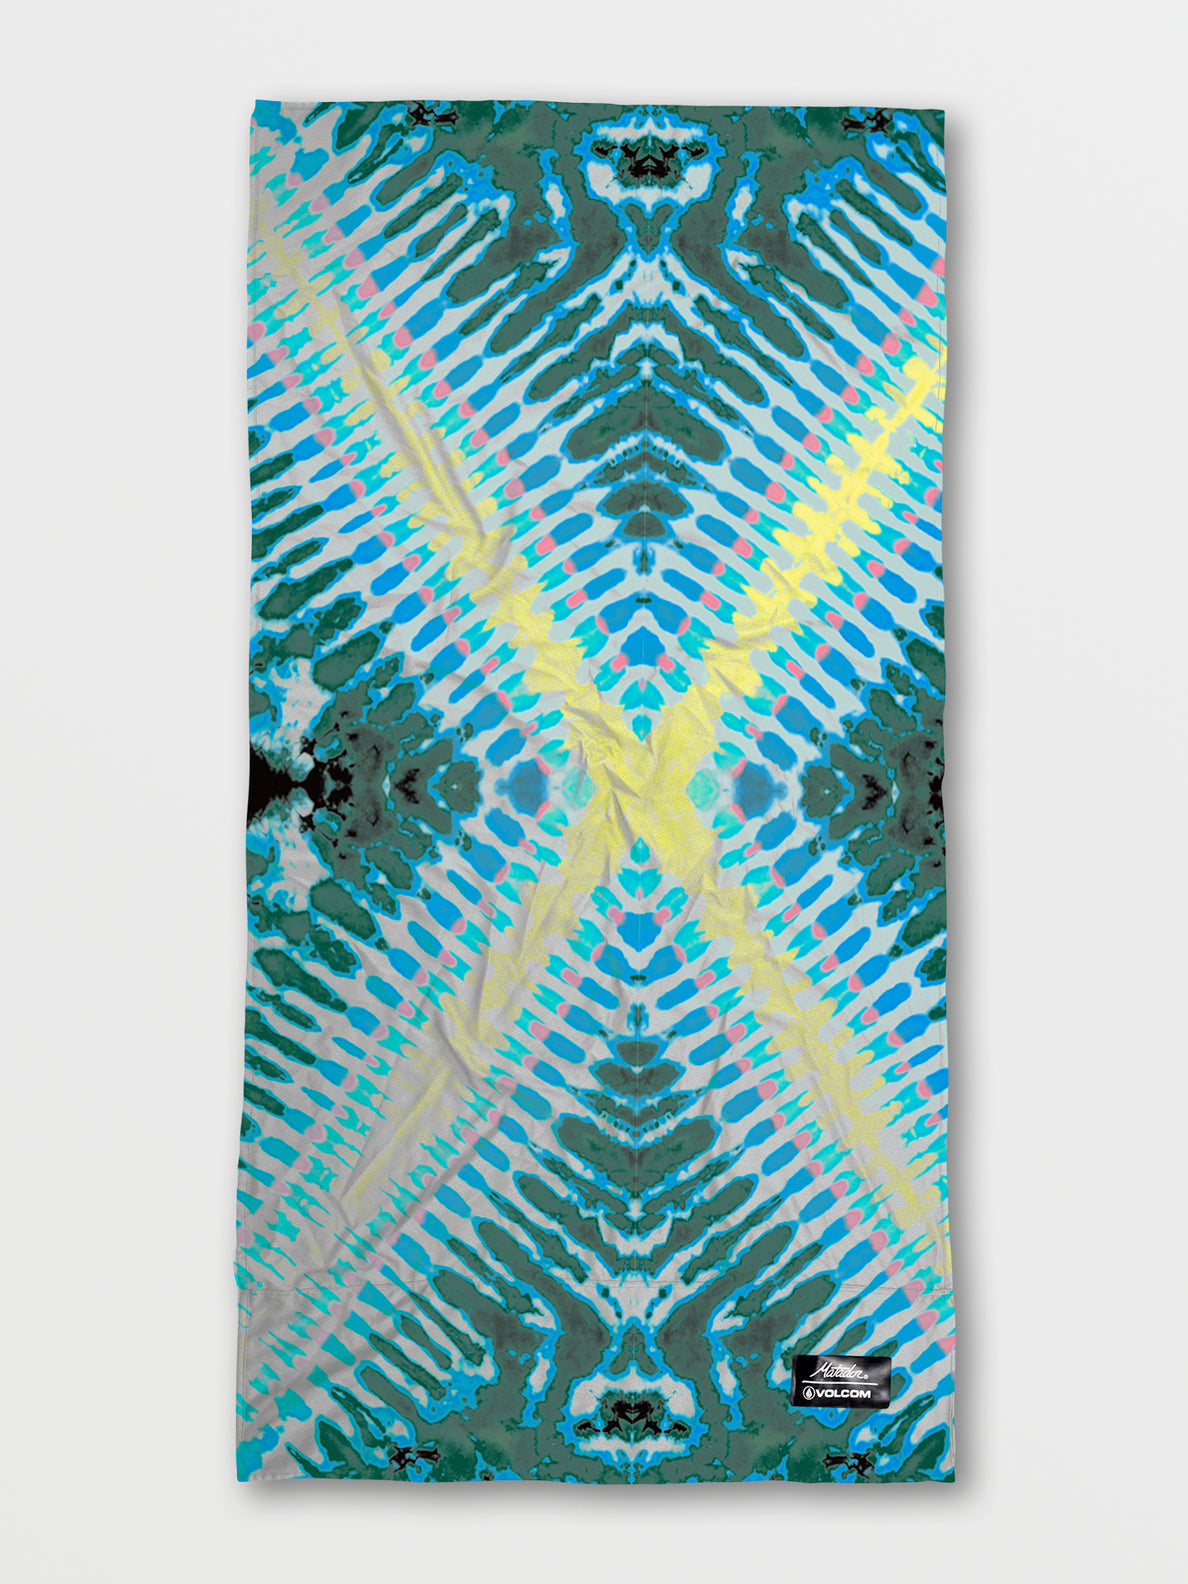 Volcom x Matador Packable Beach Towel - Tie Dye – Volcom US